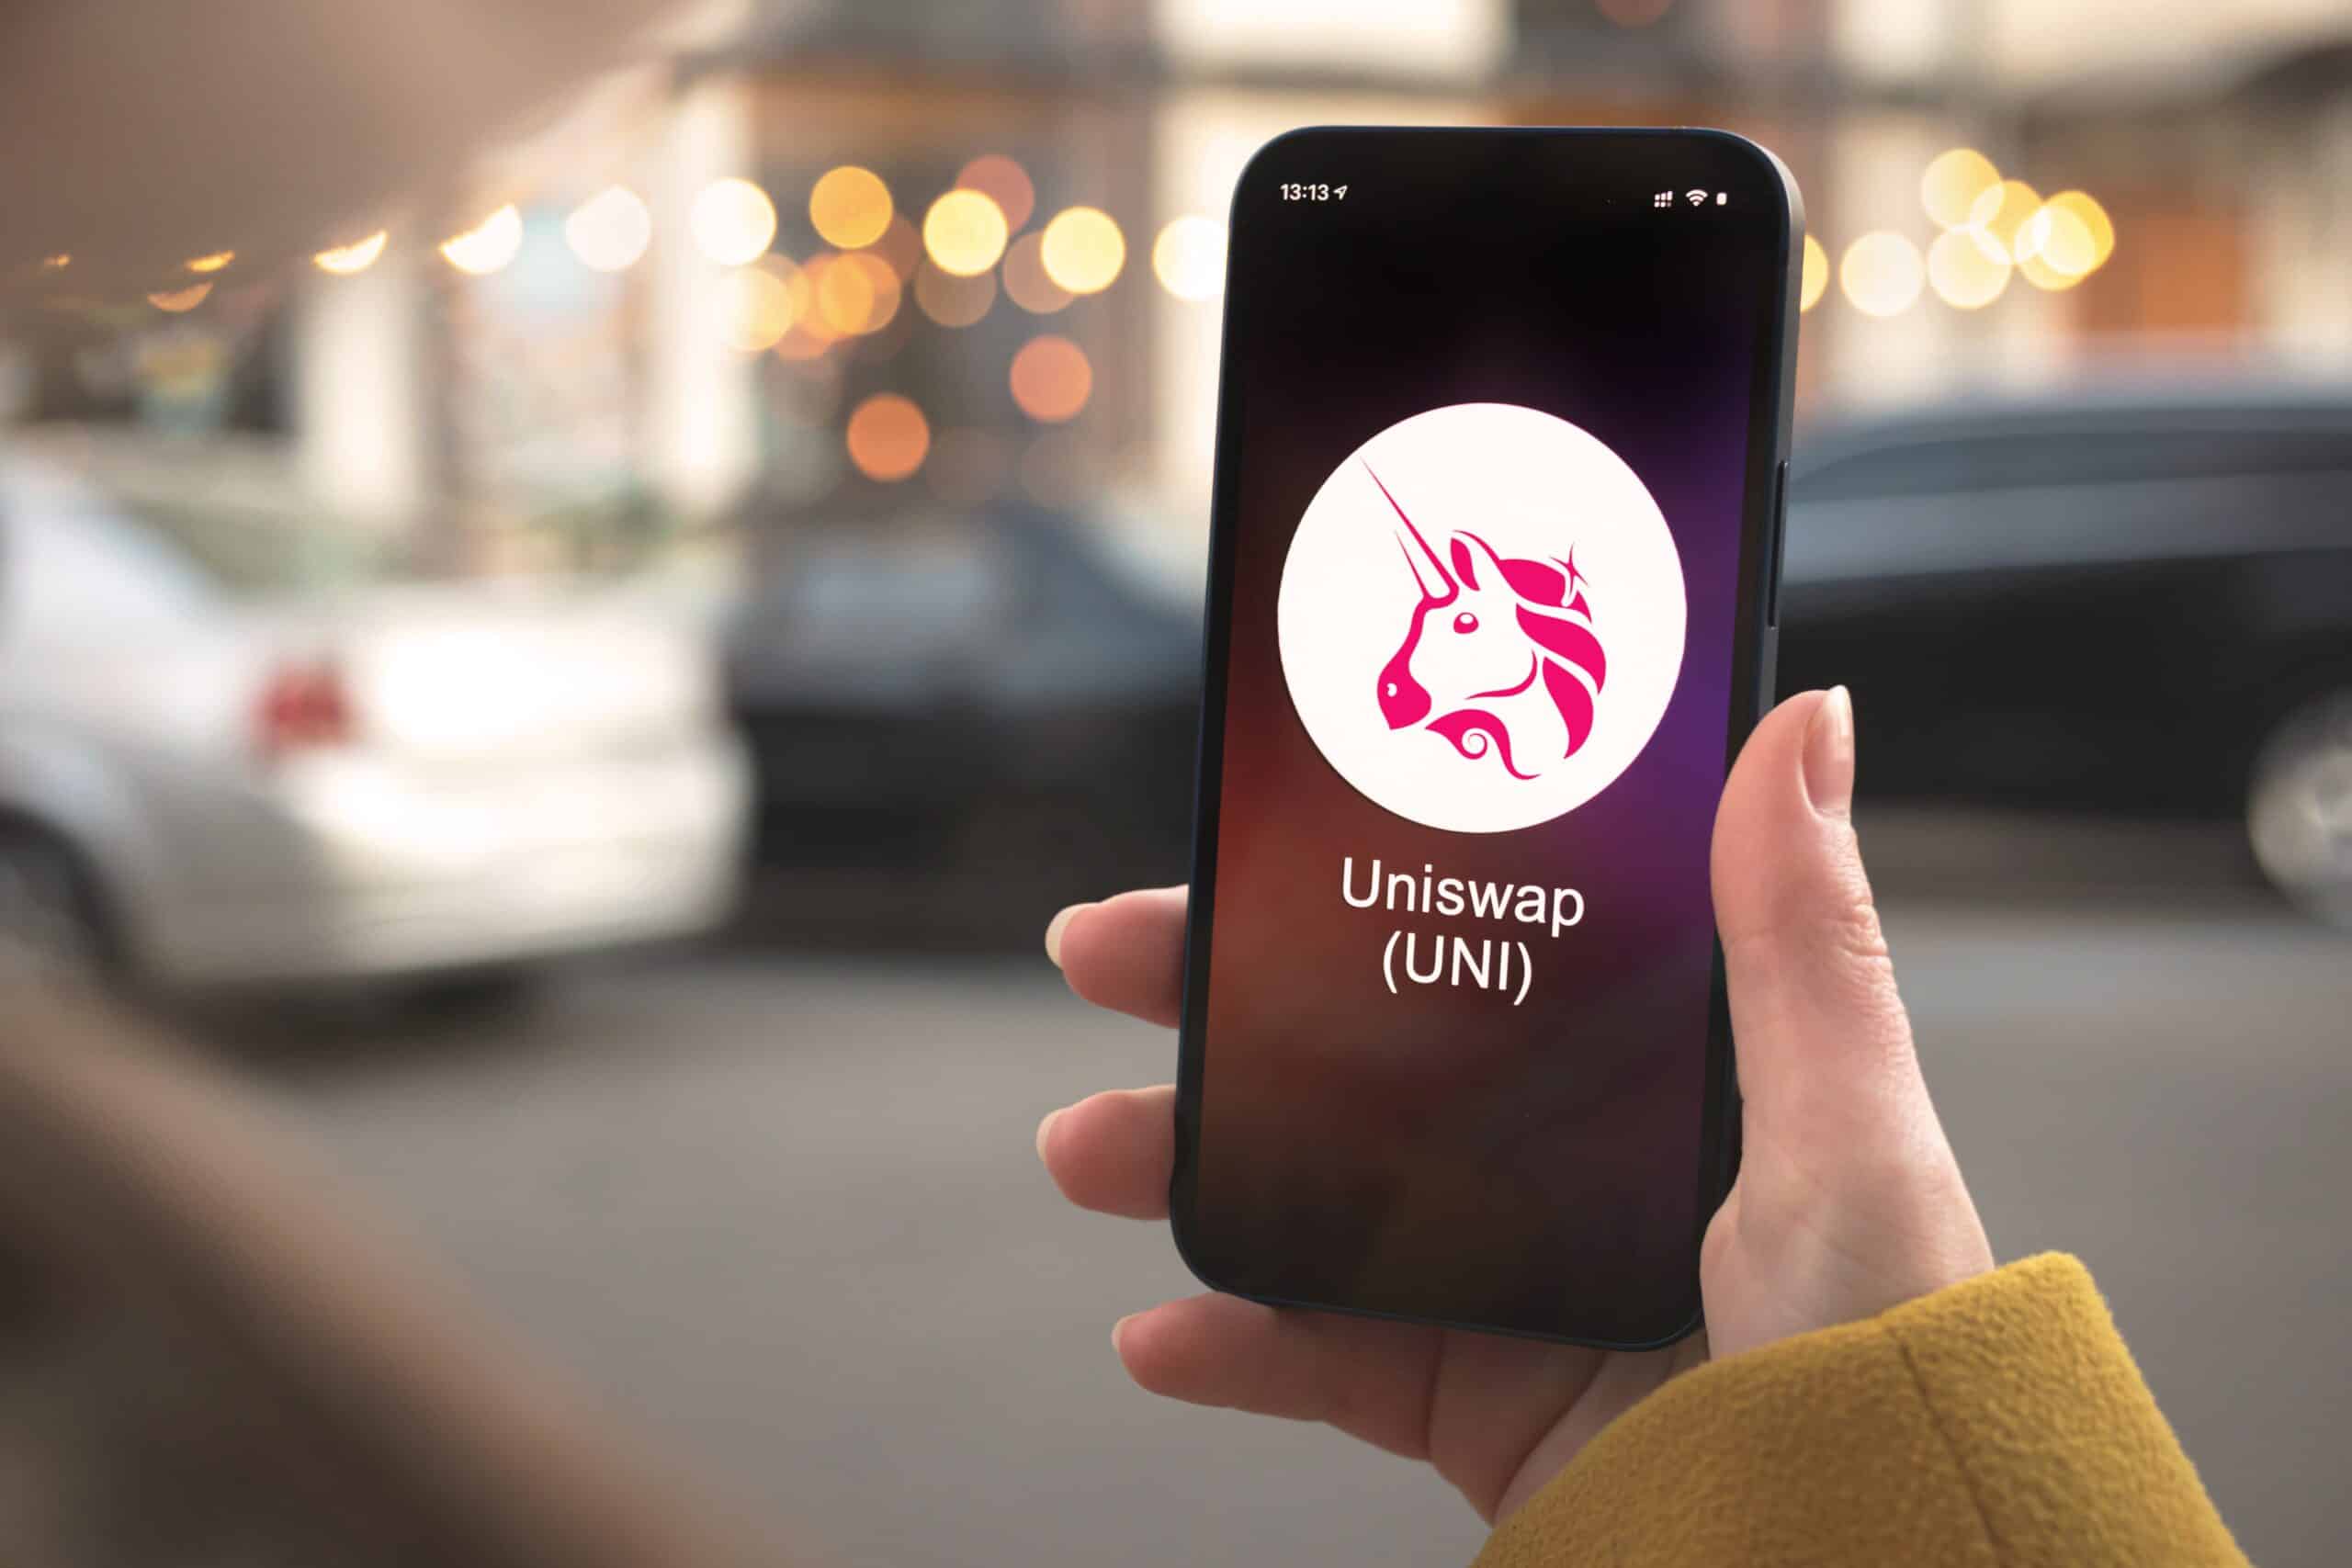 O logotipo de um unicórnio rosa do Uniswap é exibido em um telefone na mão de uma pessoa